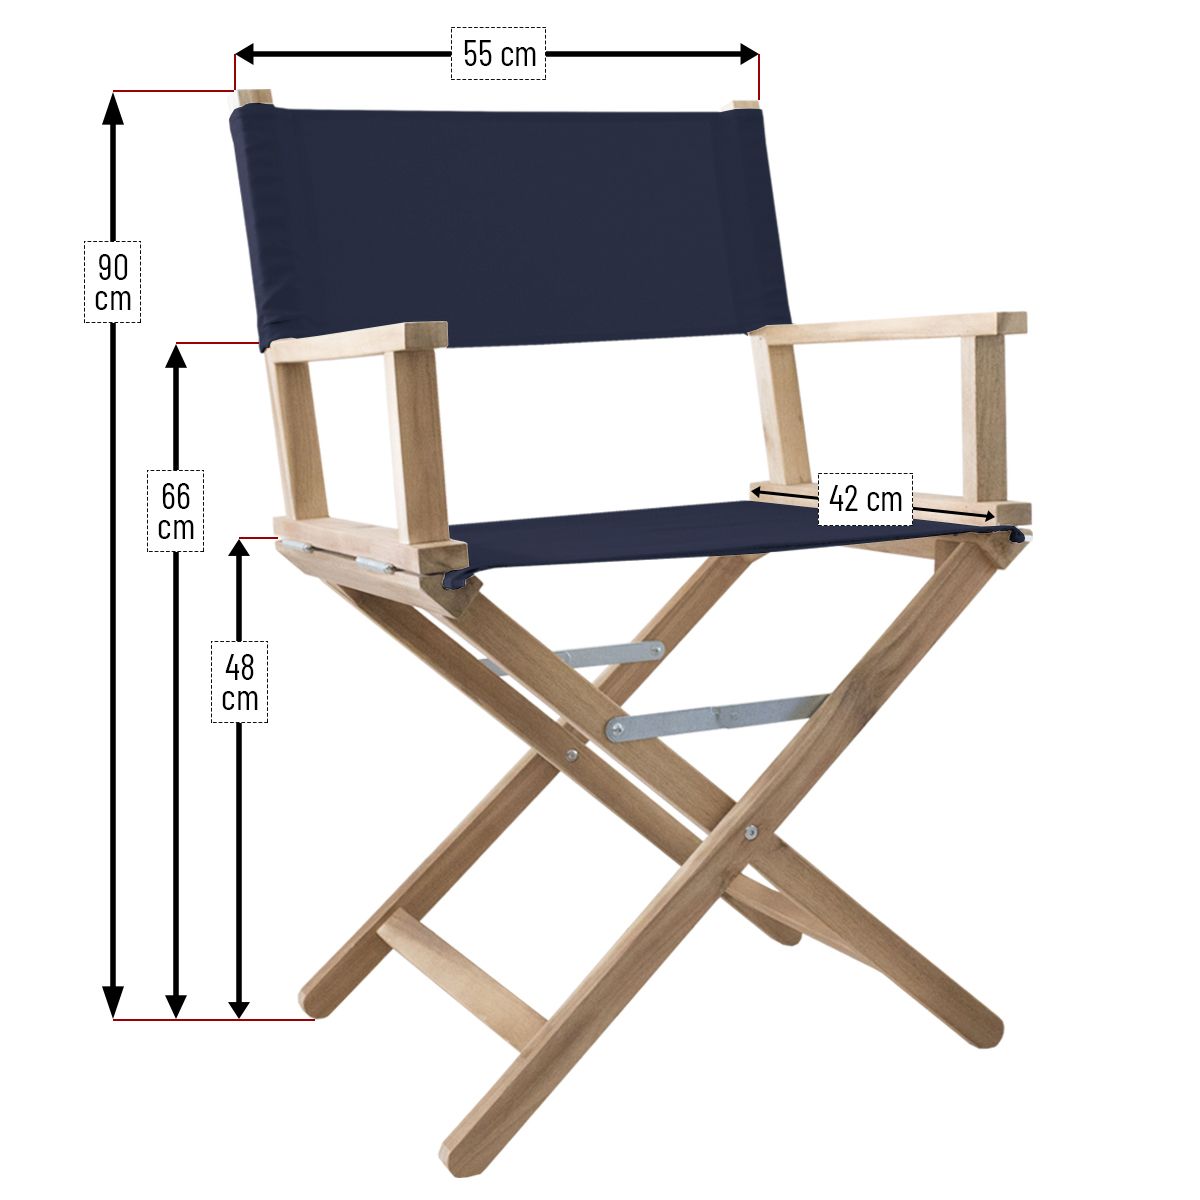 Dimensions fauteuils cinéma taille adulte 2020